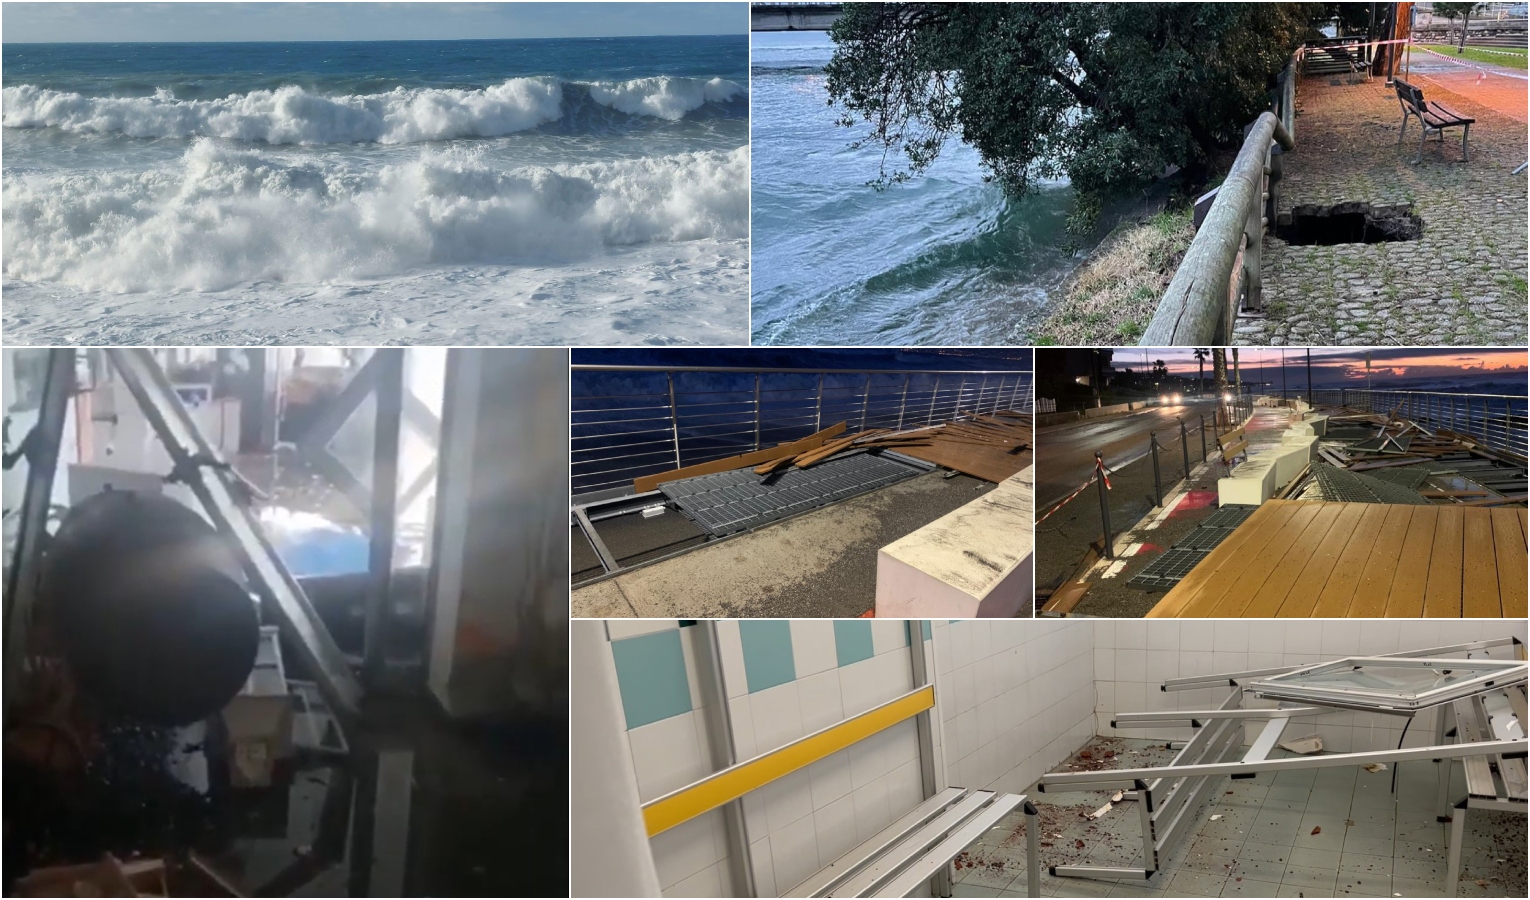 Mareggiata in Liguria: danni nel Levante e a Ventimiglia